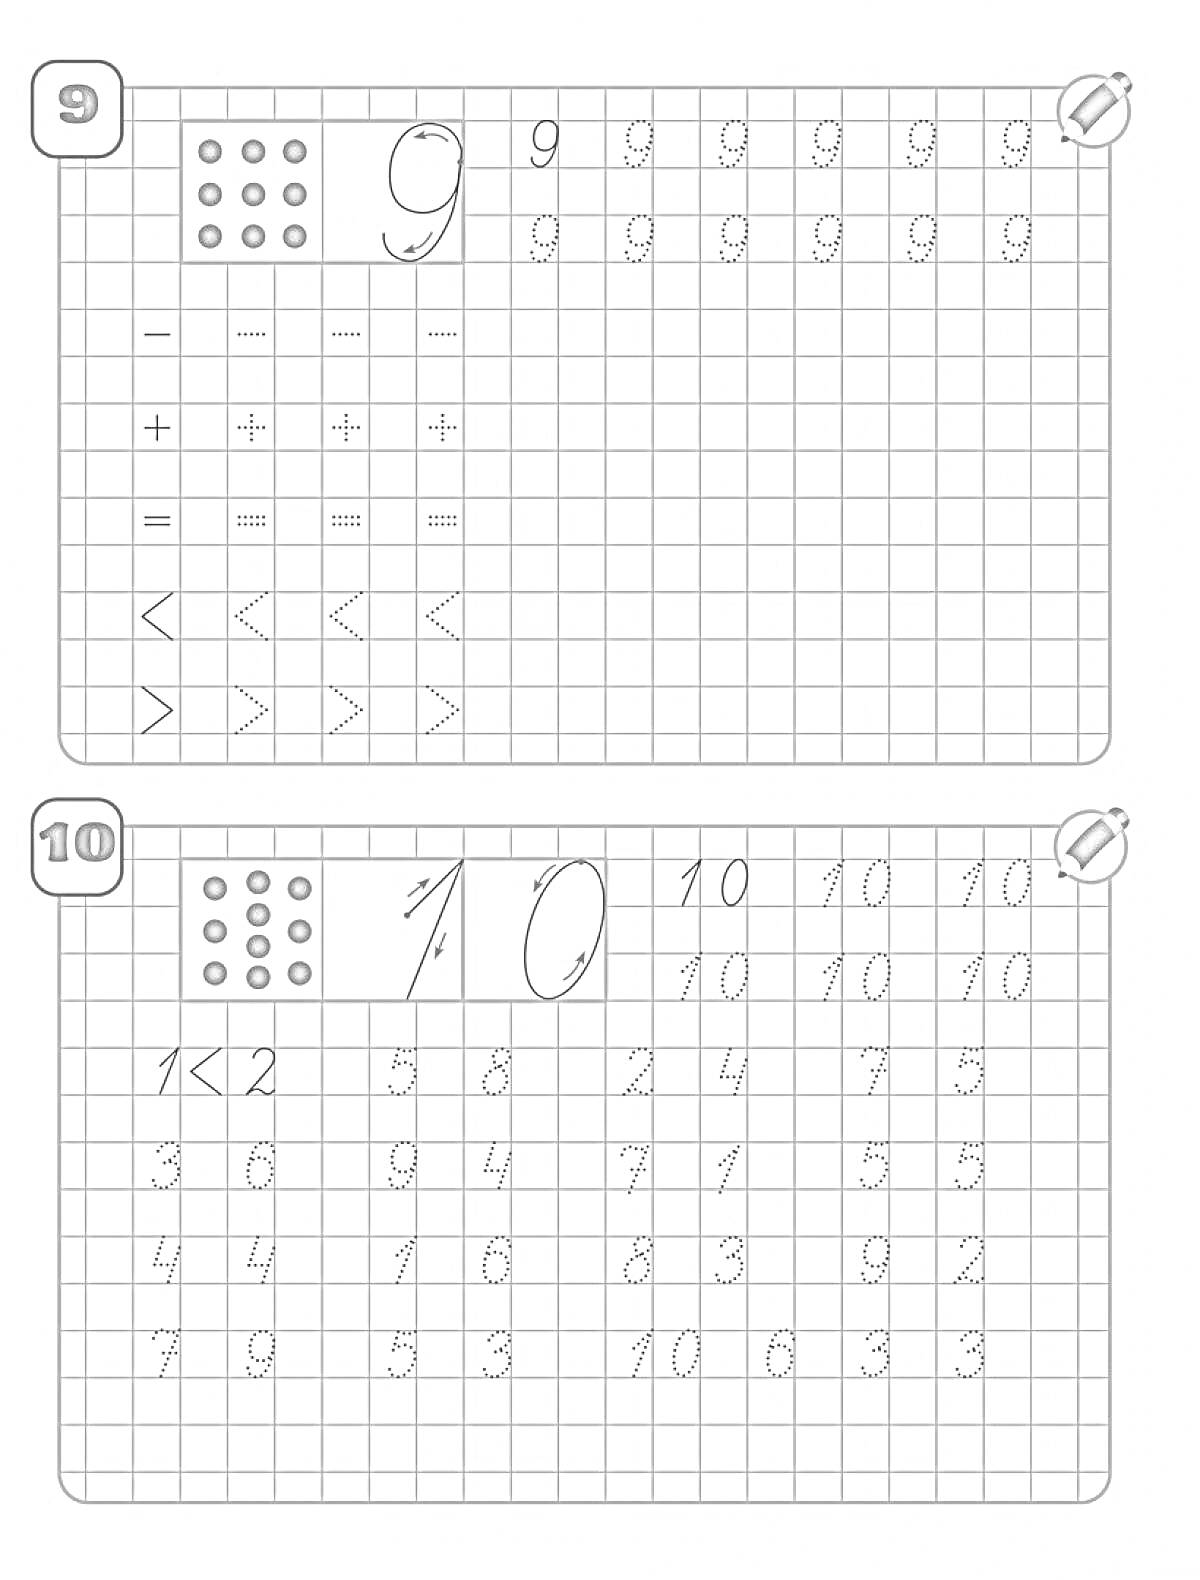 Раскраска Прописи для числа 9 и 10 с арифметическими знаками и знаками сравнения